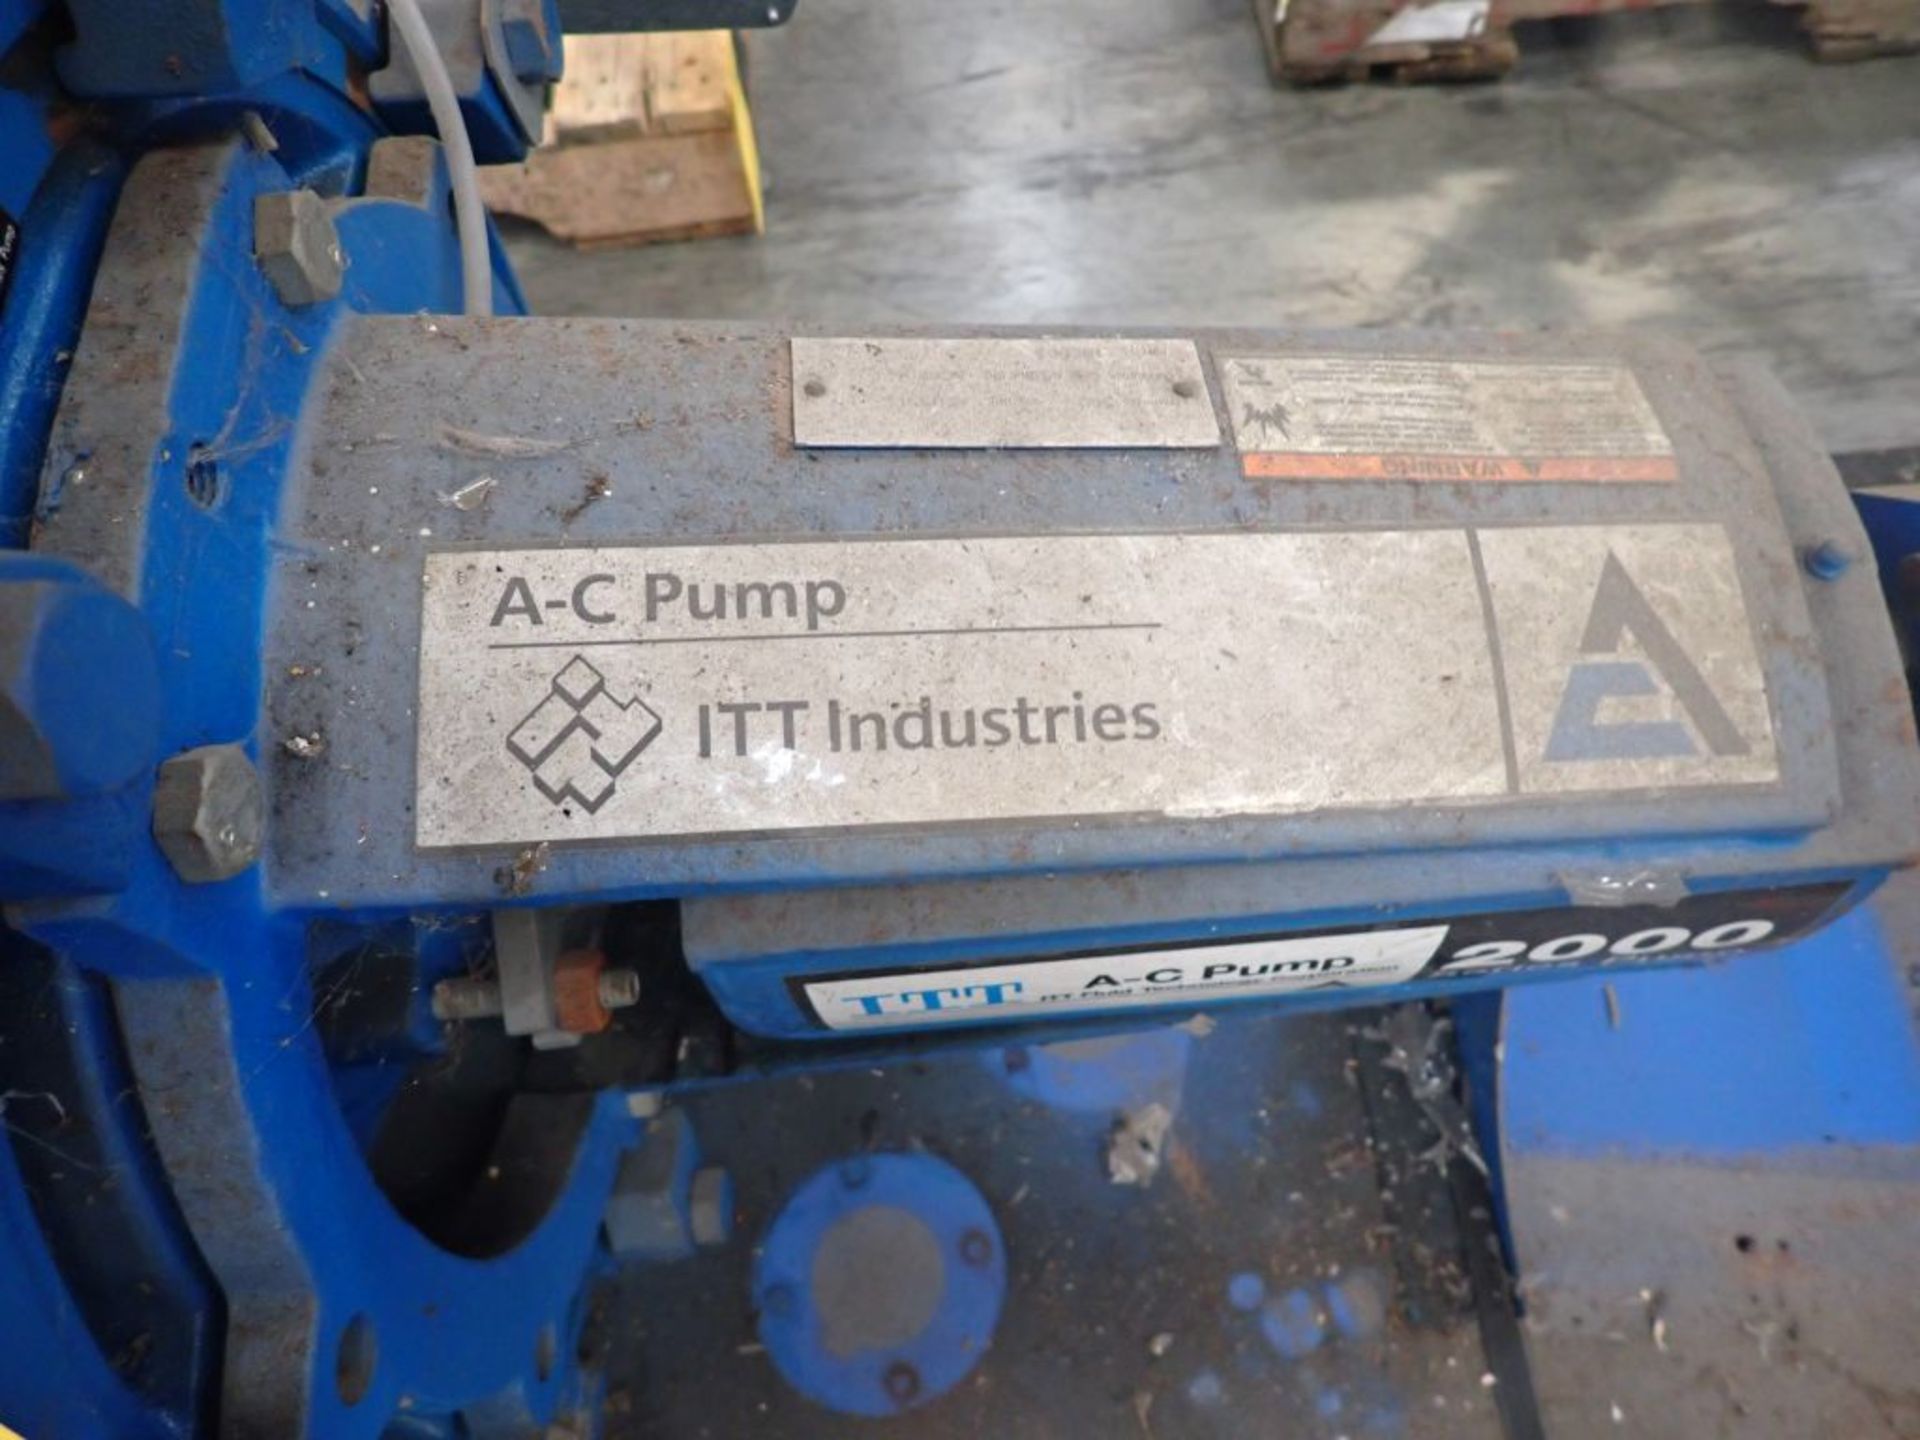 ITT AC Pump - Part No. 1BE003; Frame No. 500 - Image 2 of 3